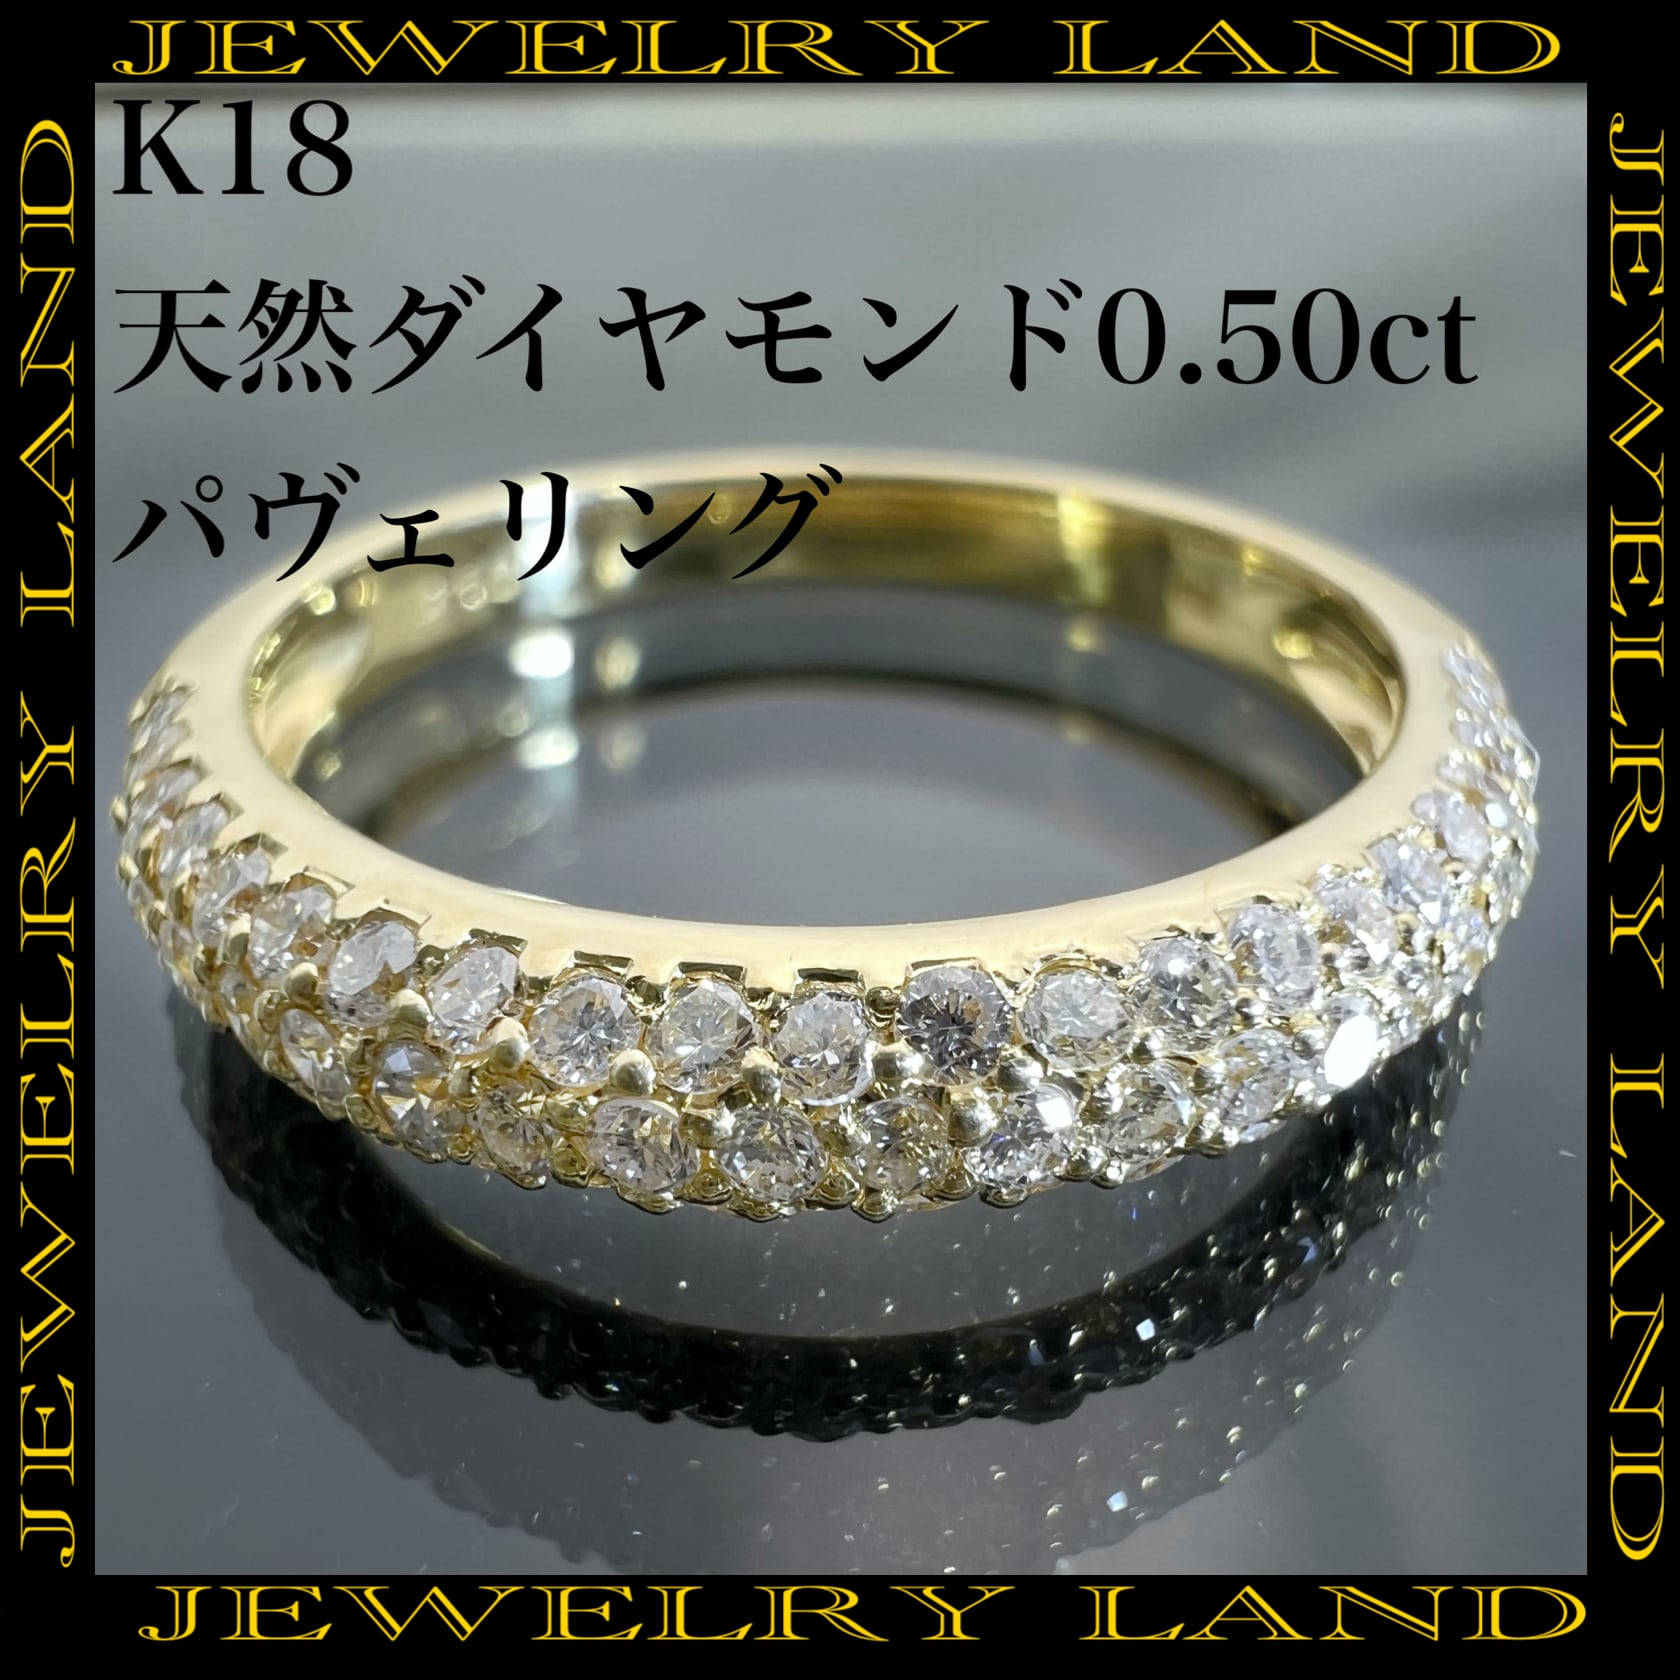 K18wg 天然ダイヤモンド 計0.50ct パヴェリング